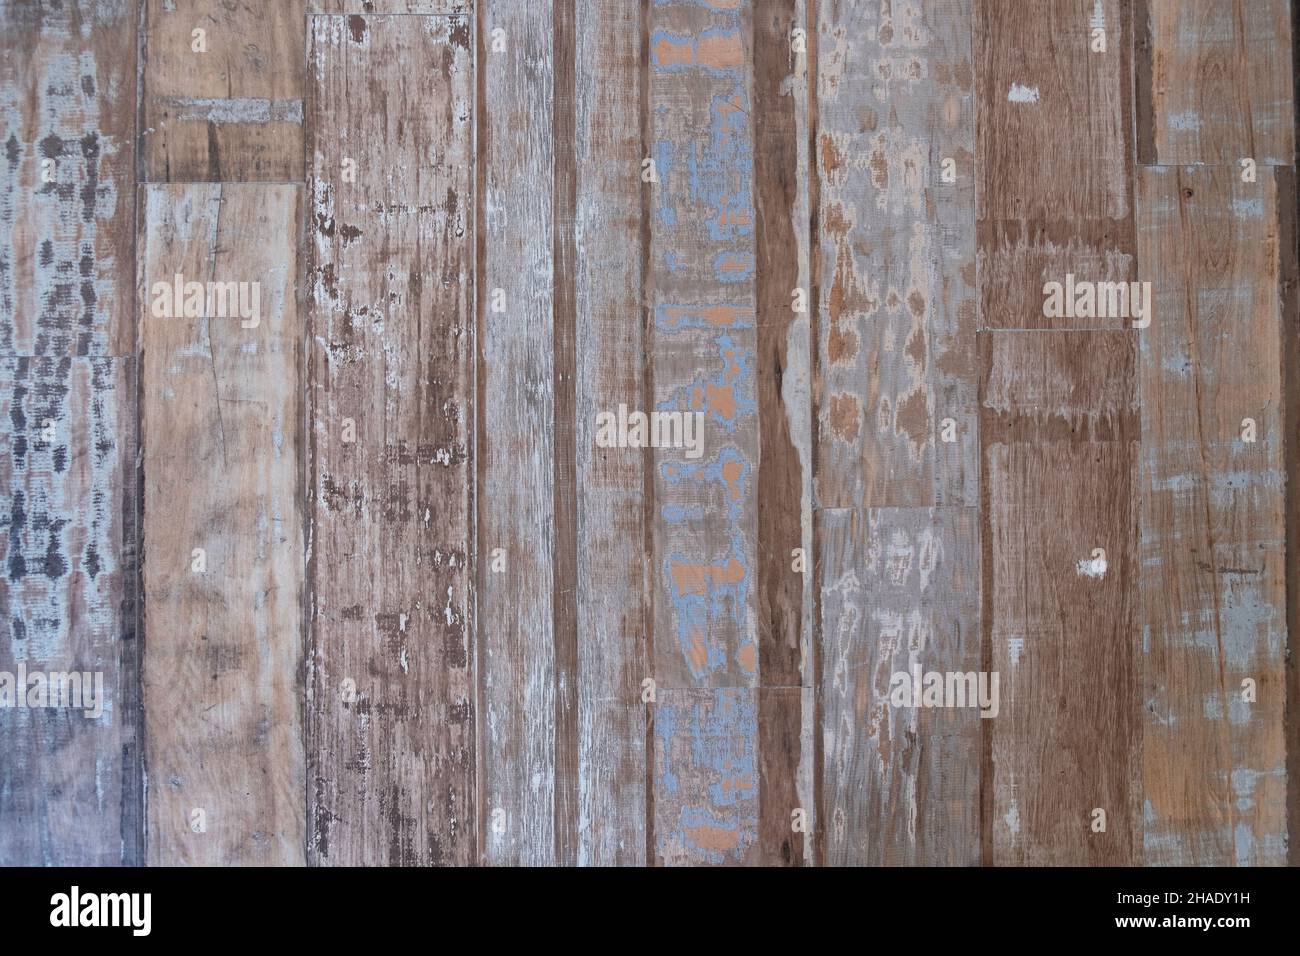 Fondo de madera Grunge con textura de madera y residuos de pintura visibles. Suelos de madera gastados Foto de stock